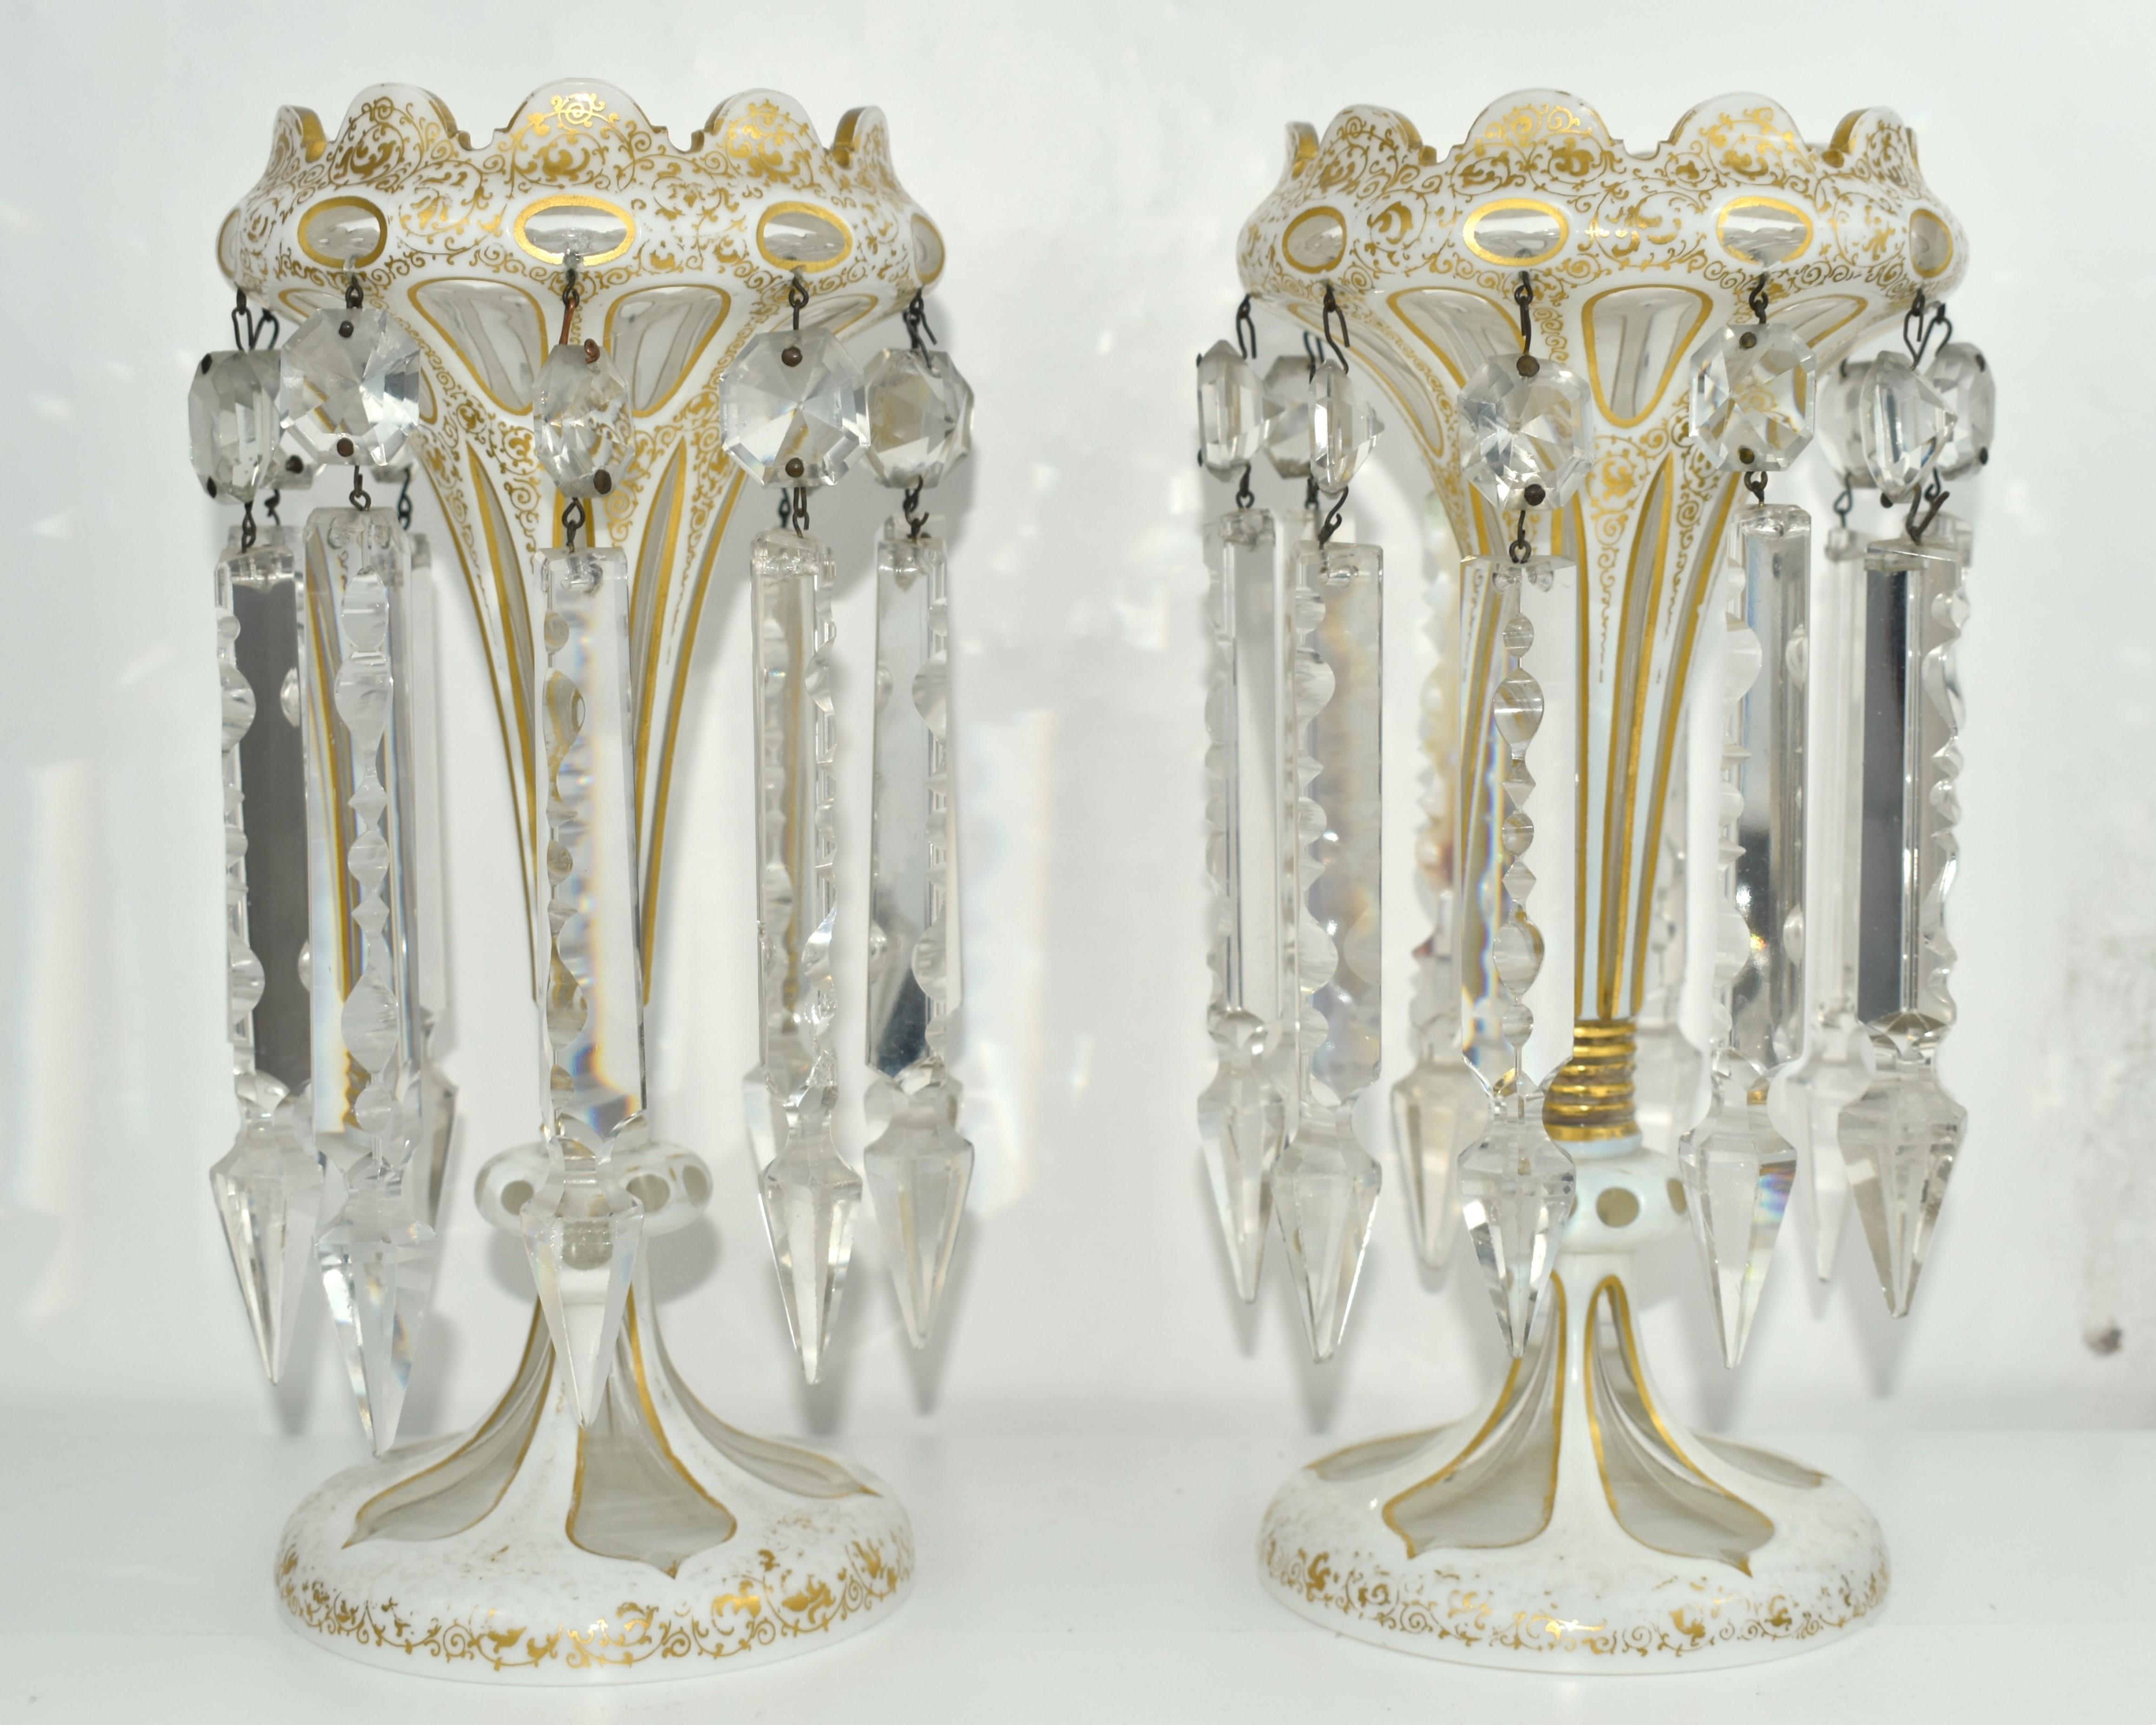 Hergestellt von den böhmischen Kunstglasherstellern des 19. Jahrhunderts, transparentes Kristall mit weißem Opalglas überfangen.

Fabelhaft handgeschnitten und handbemalt rund um den Körper, die milchig-weiße Schicht mit feiner und reicher